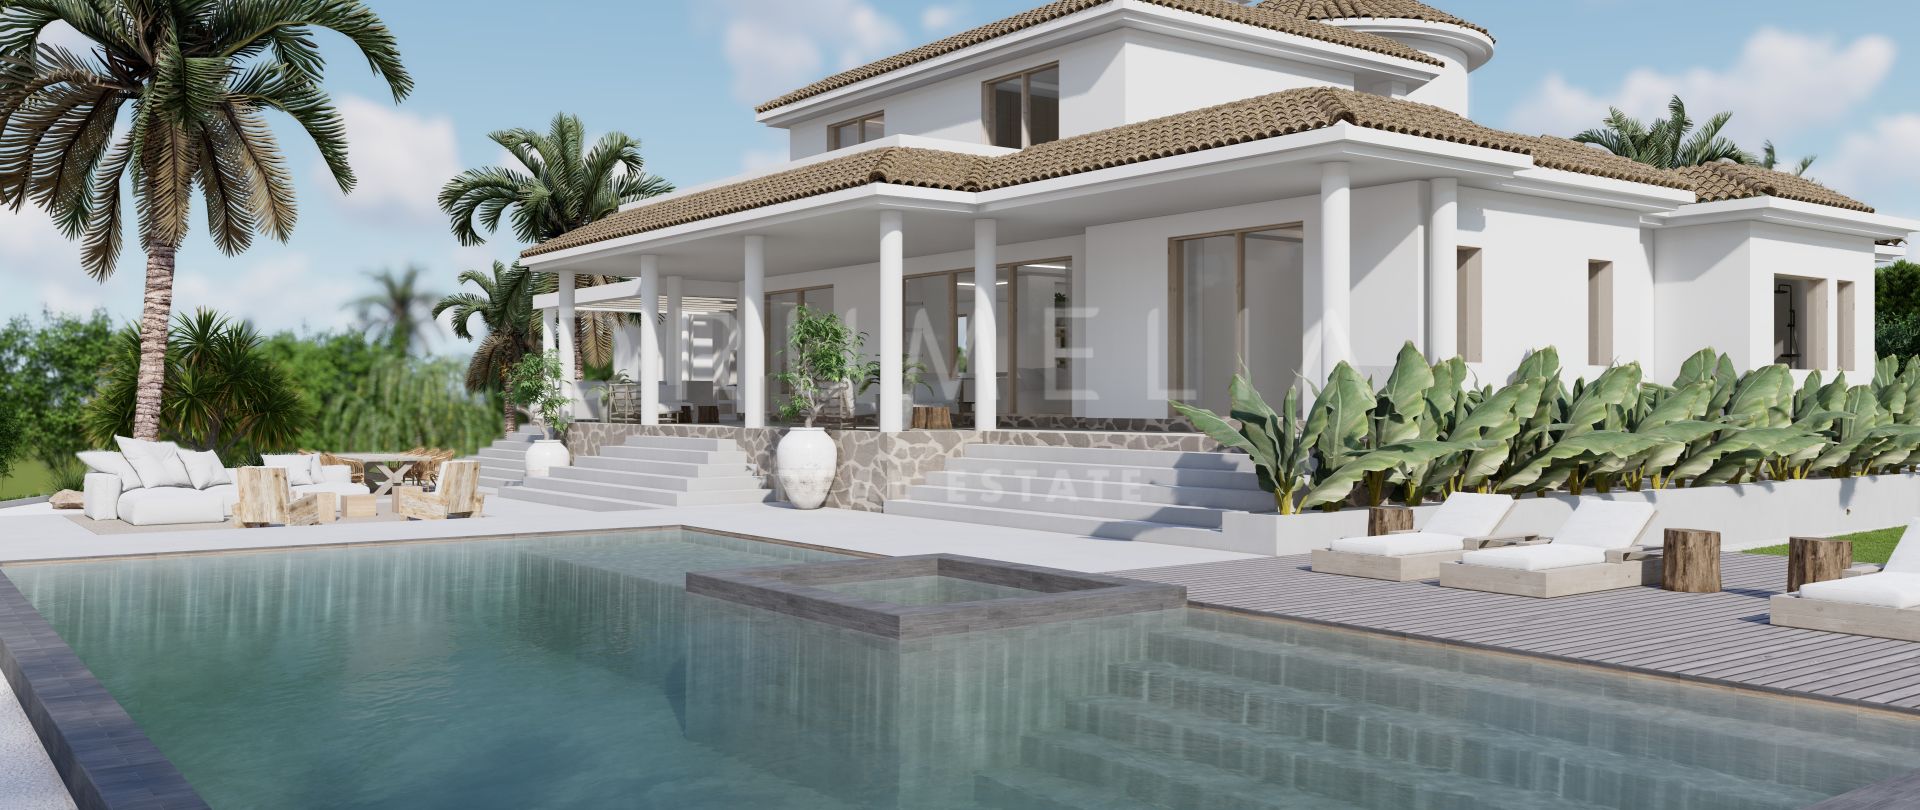 Wunderschöne mediterrane Luxusvilla zum Verkauf mit Renovierungsprojekt in El Paraiso